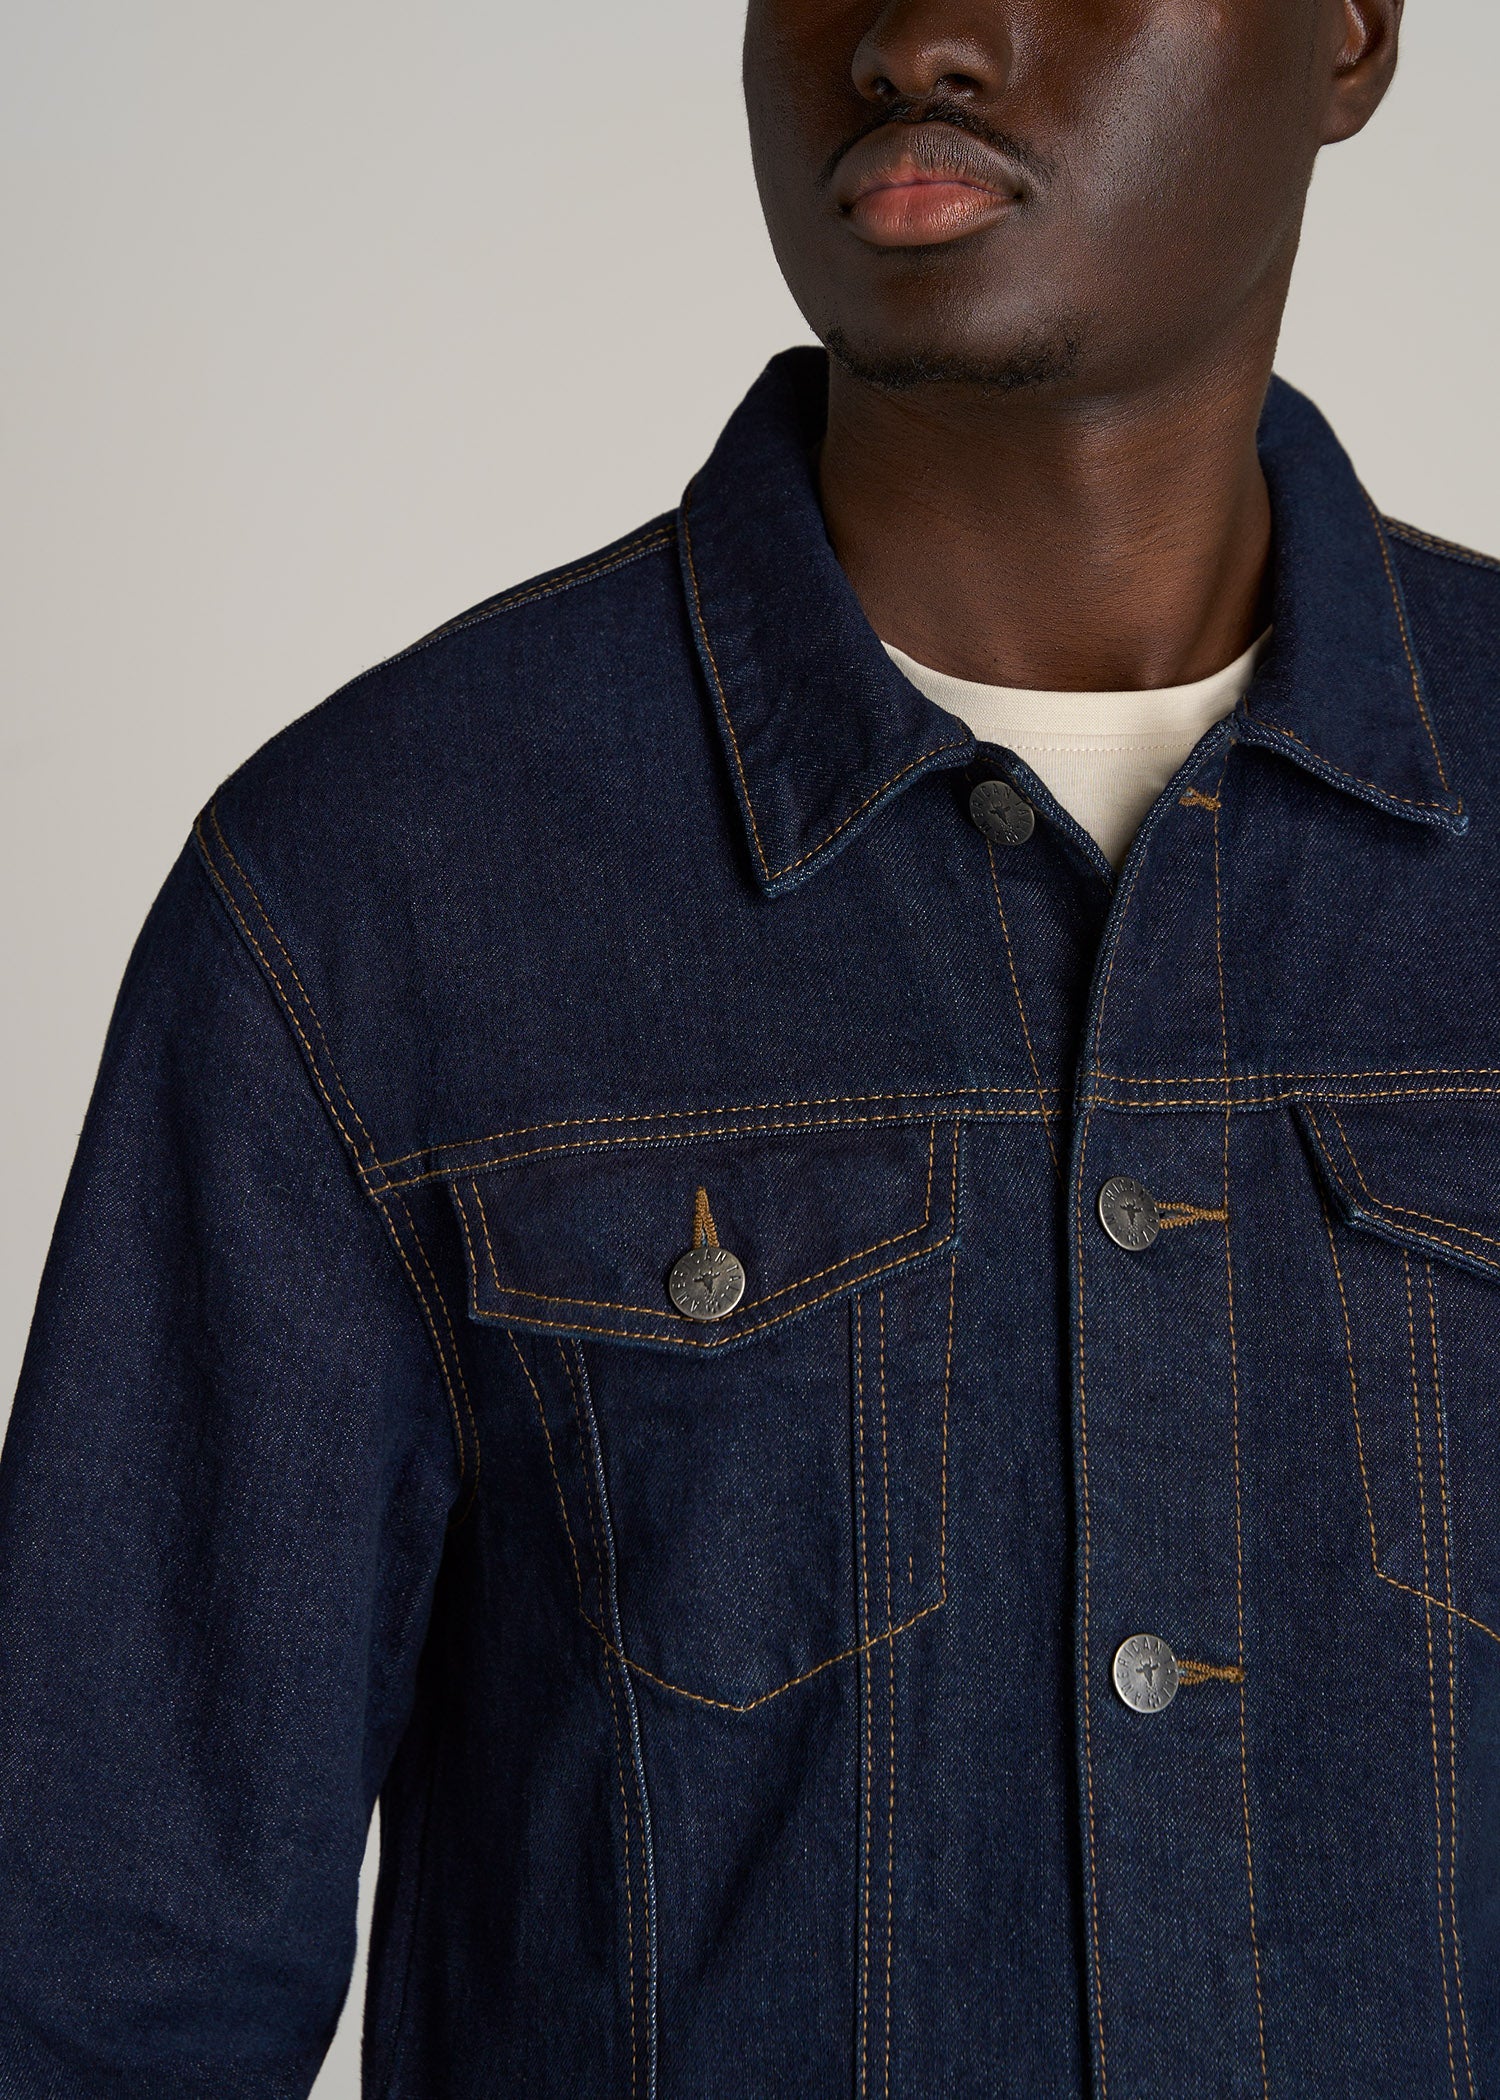 Men's Industrial Indigo Patch Denim Stretch Jacket